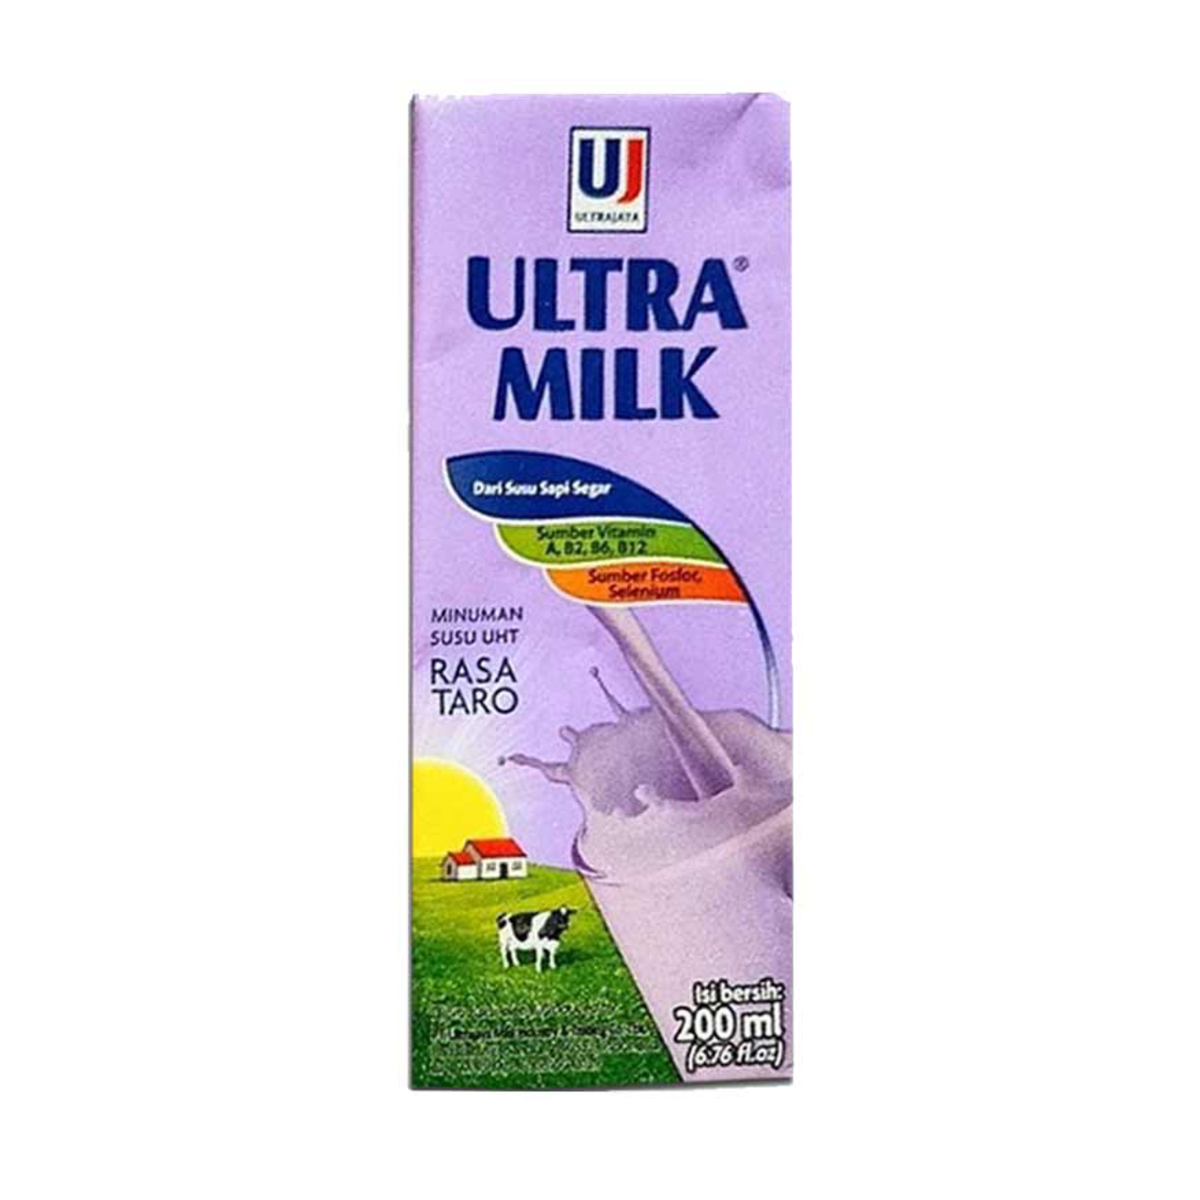 Ultra Milk UHT Taro 200ml